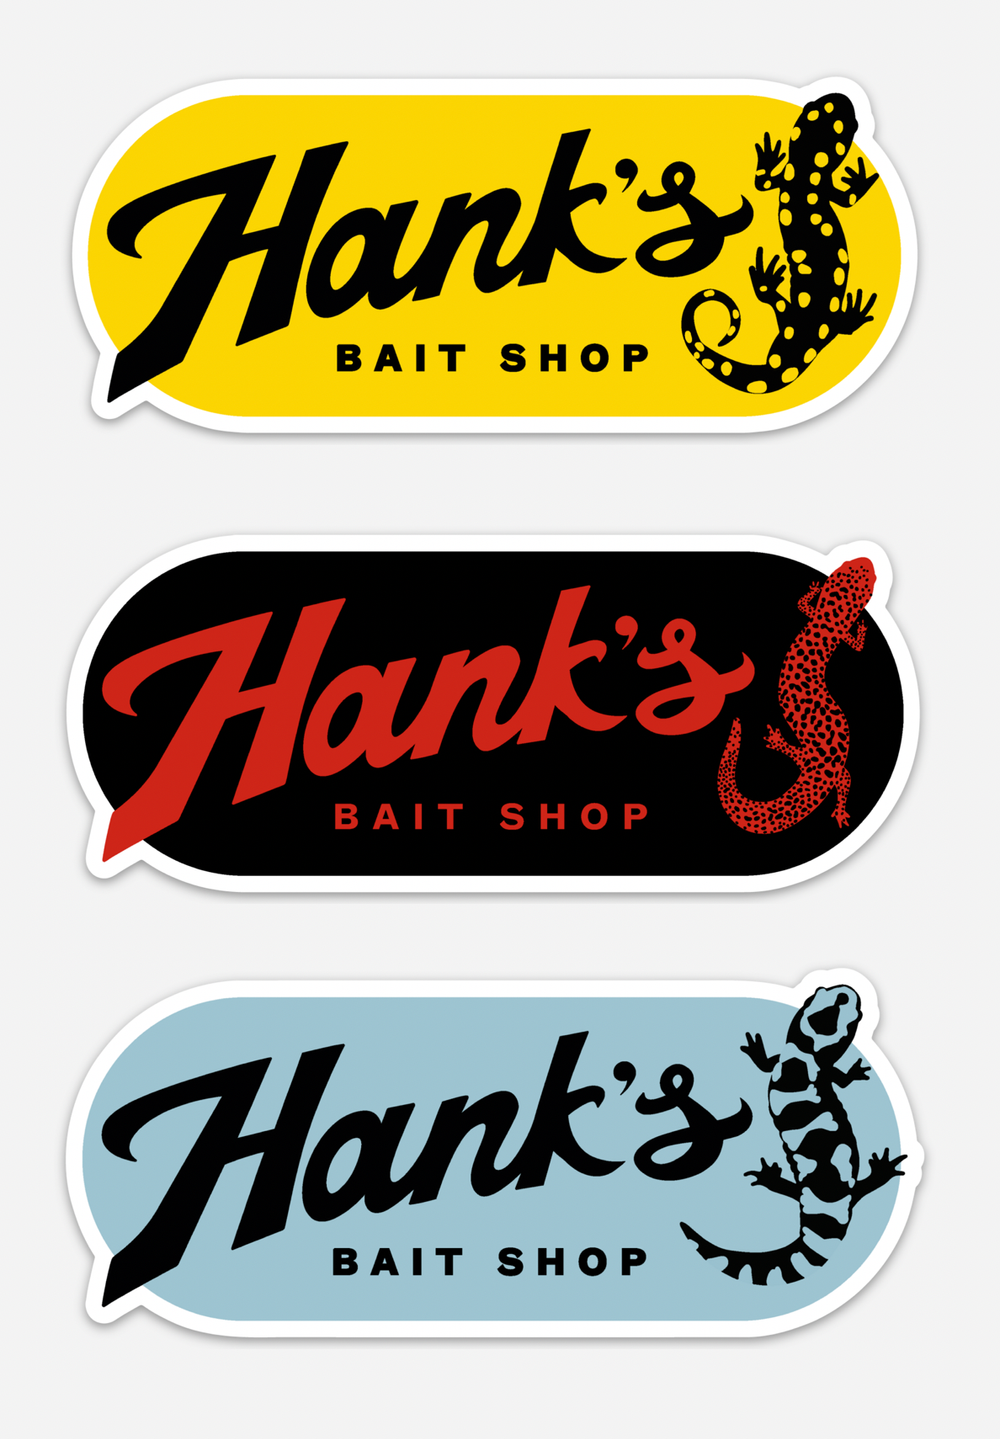 Hank's Bait Shop